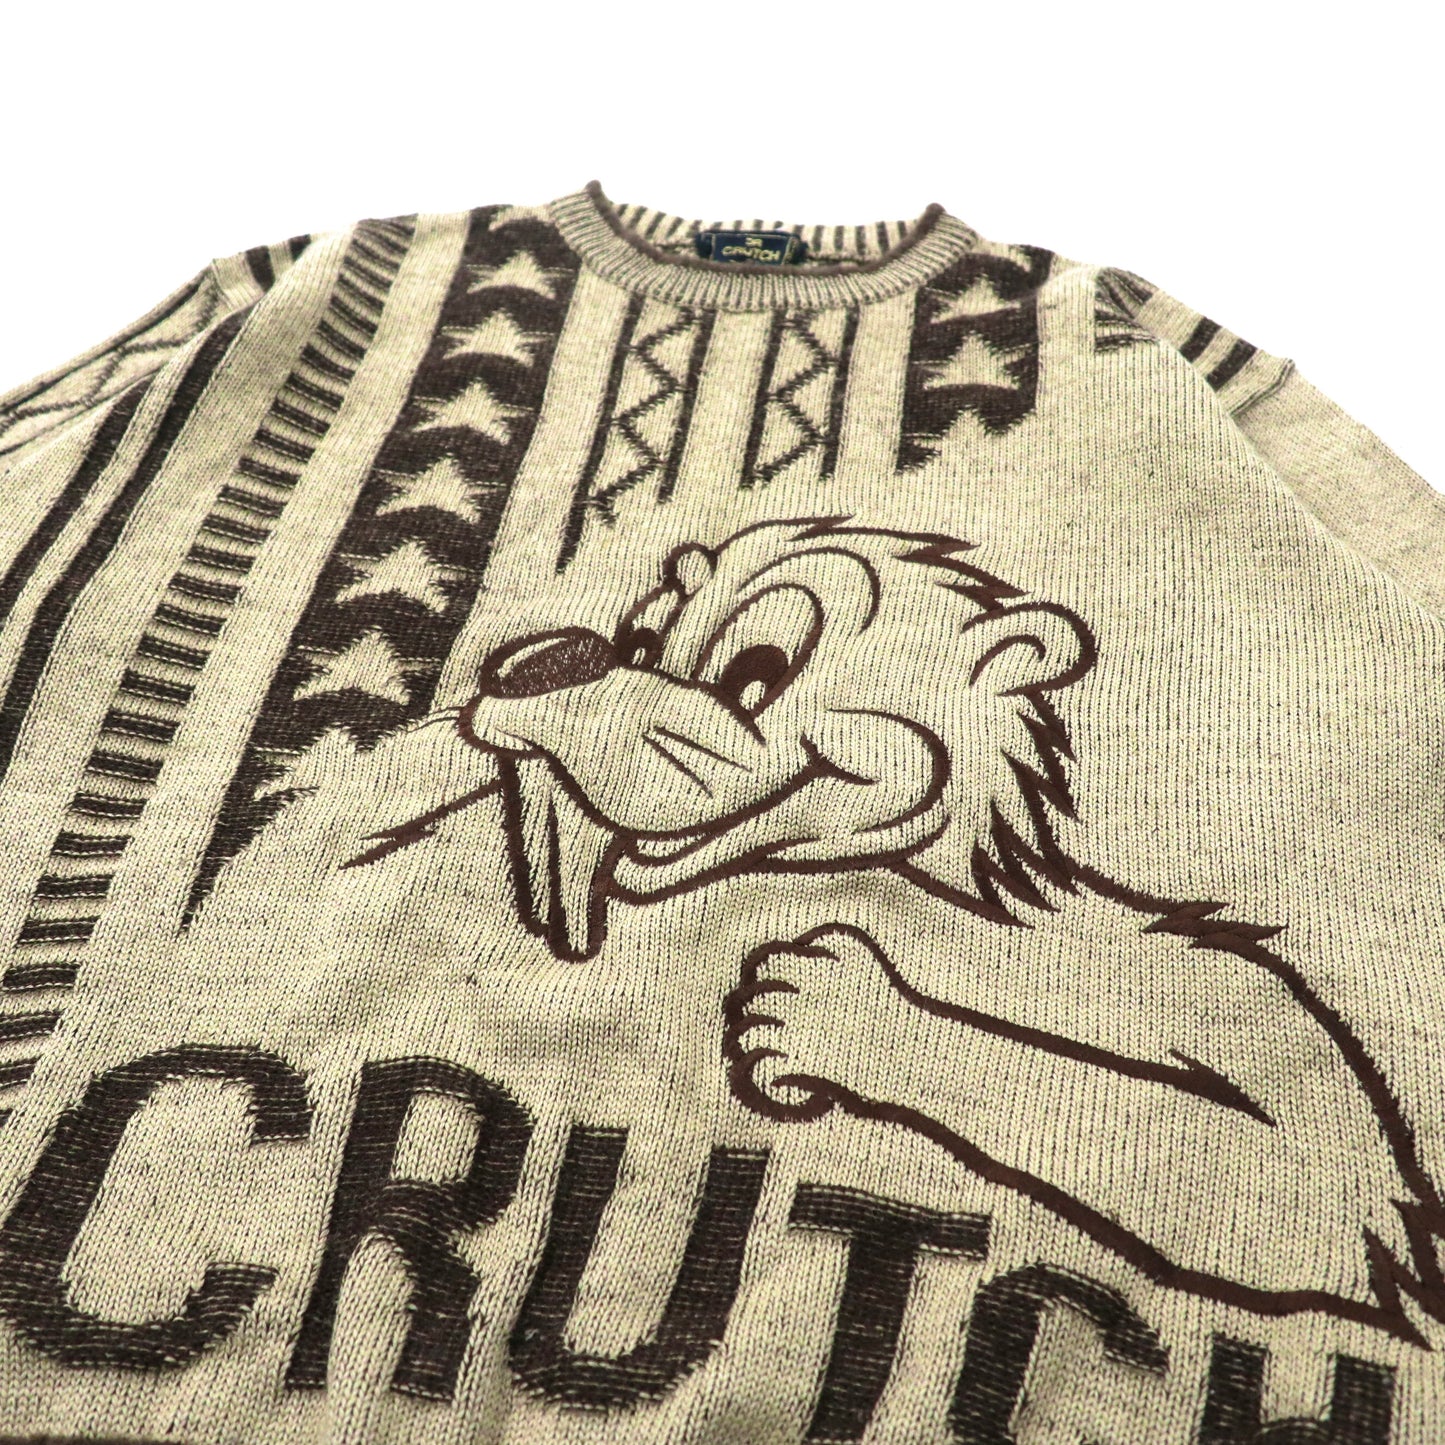 CRUTCH ( GALFY ) キャラクターニット セーター  L ブラウン アクリル 総柄 ガルフィー 90年代